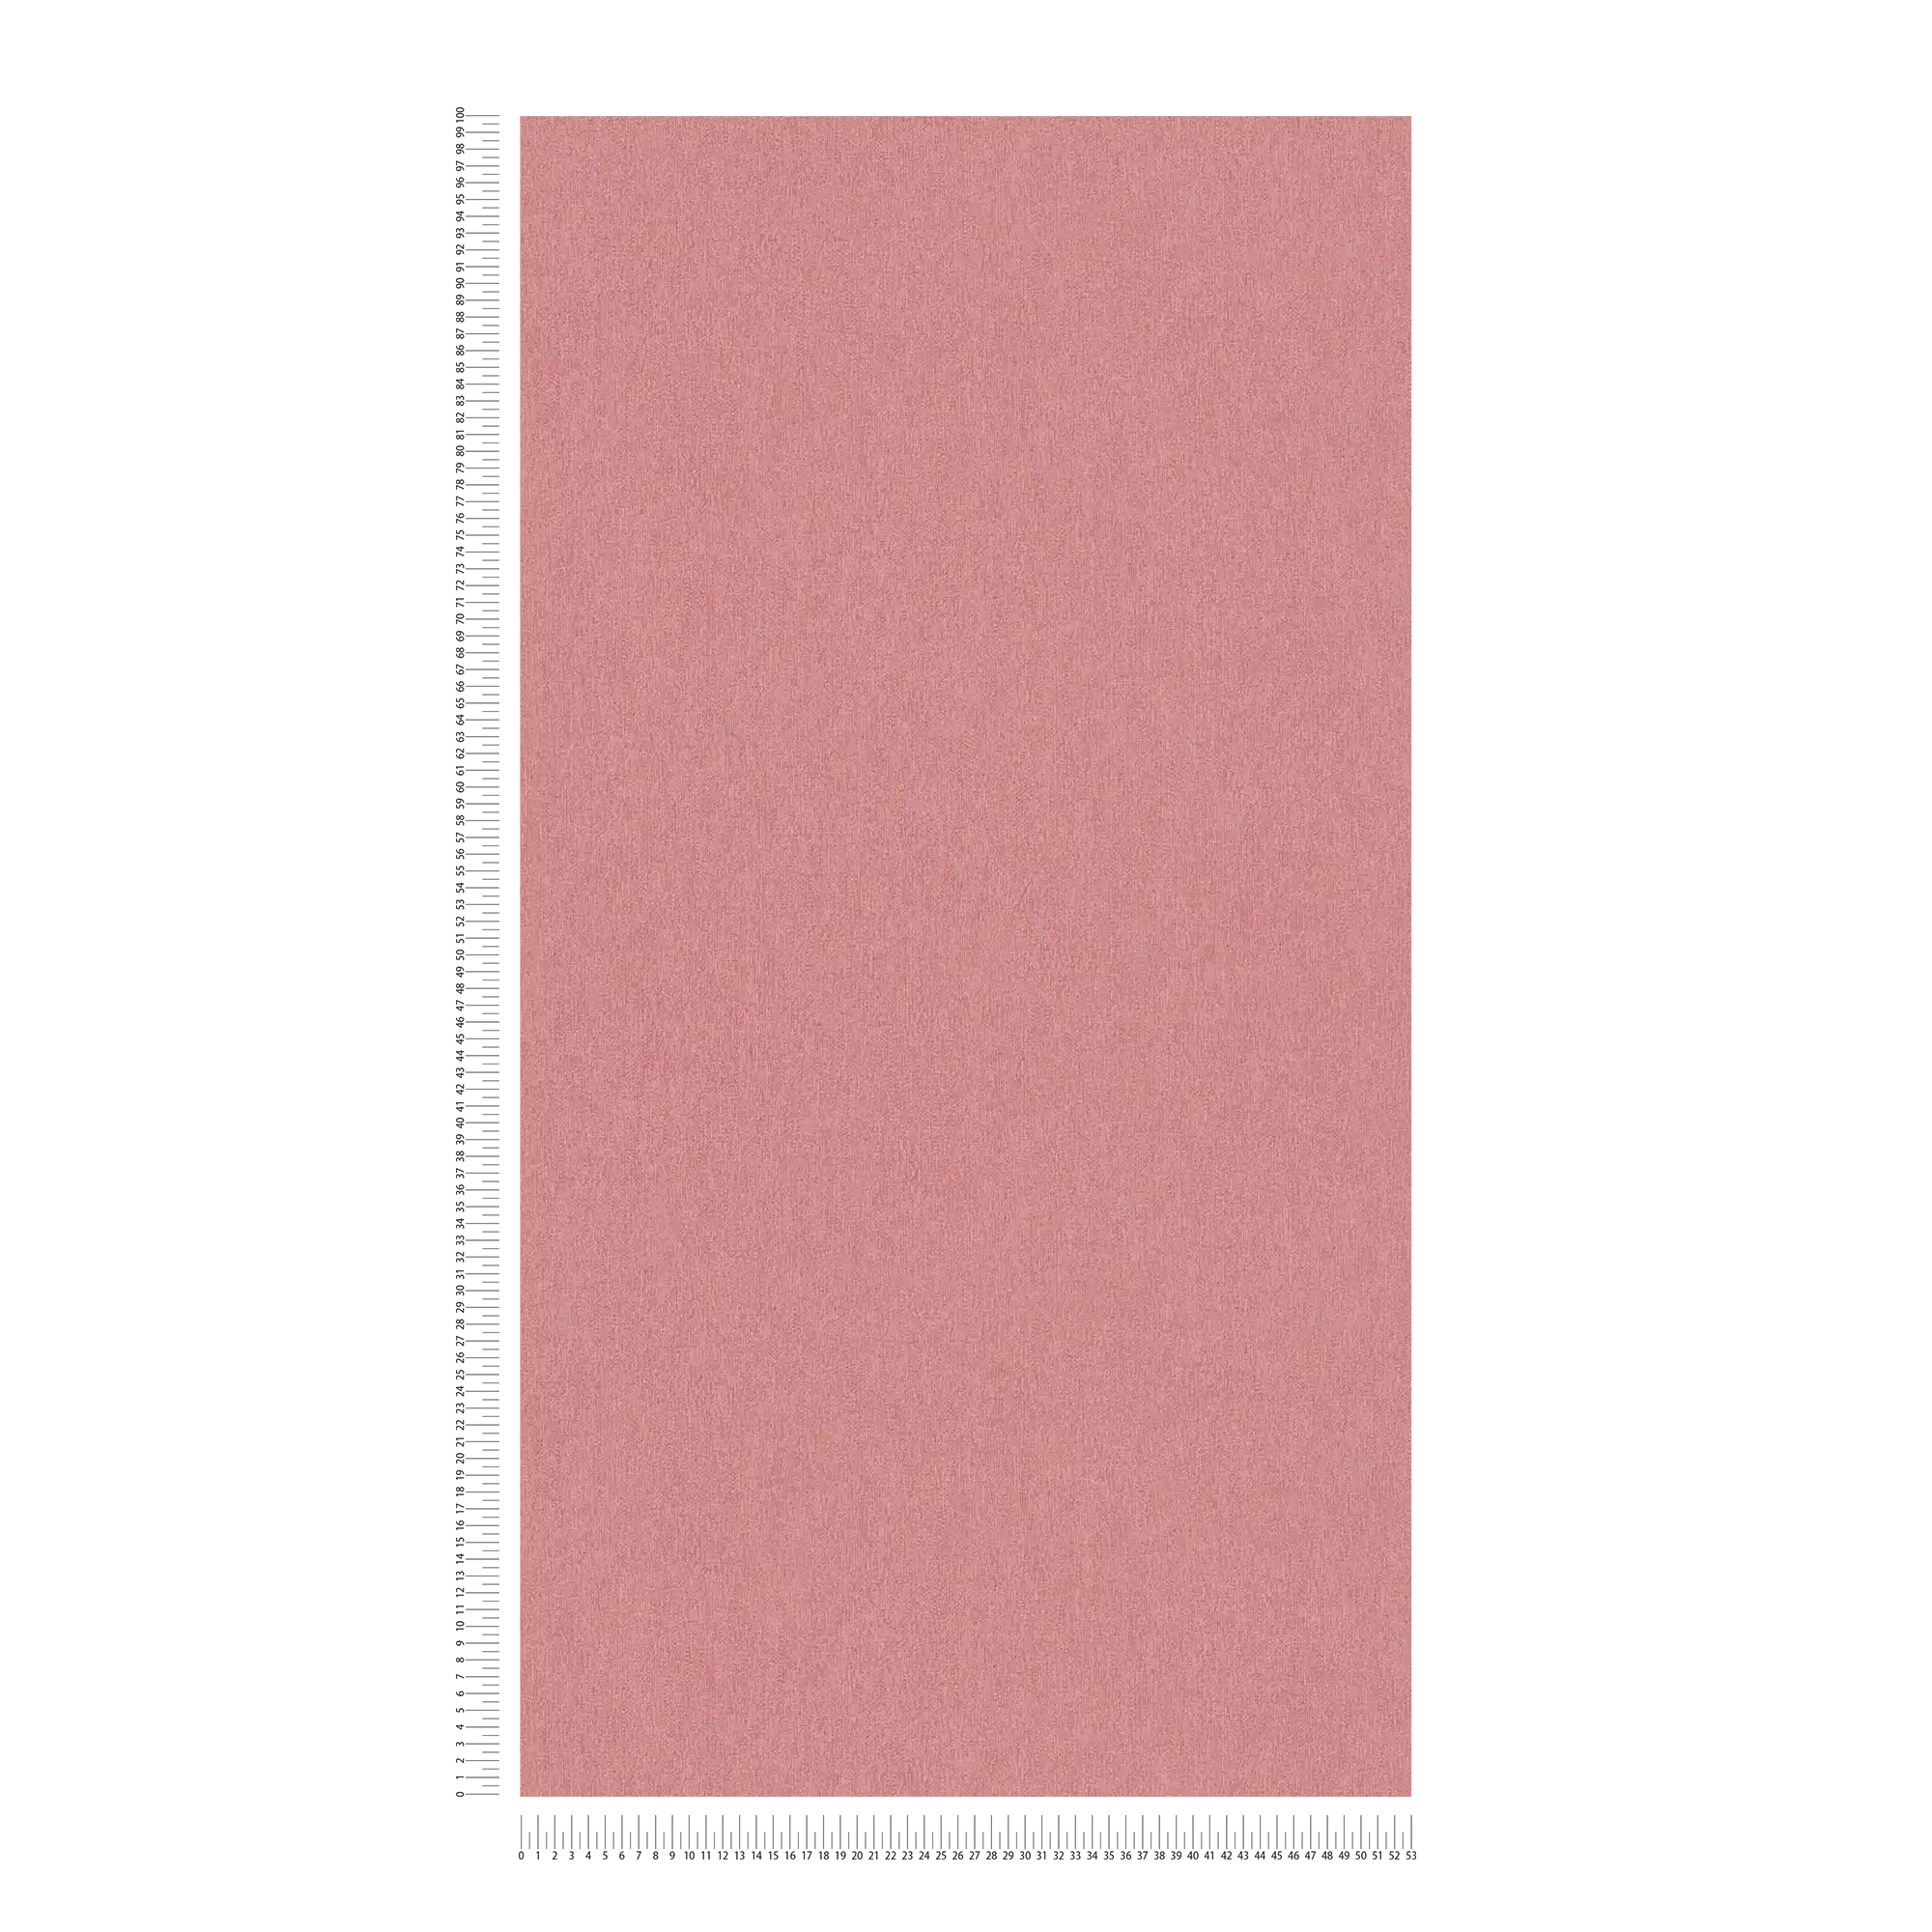             Papel pintado no tejido liso y mate con estructura - rosa
        